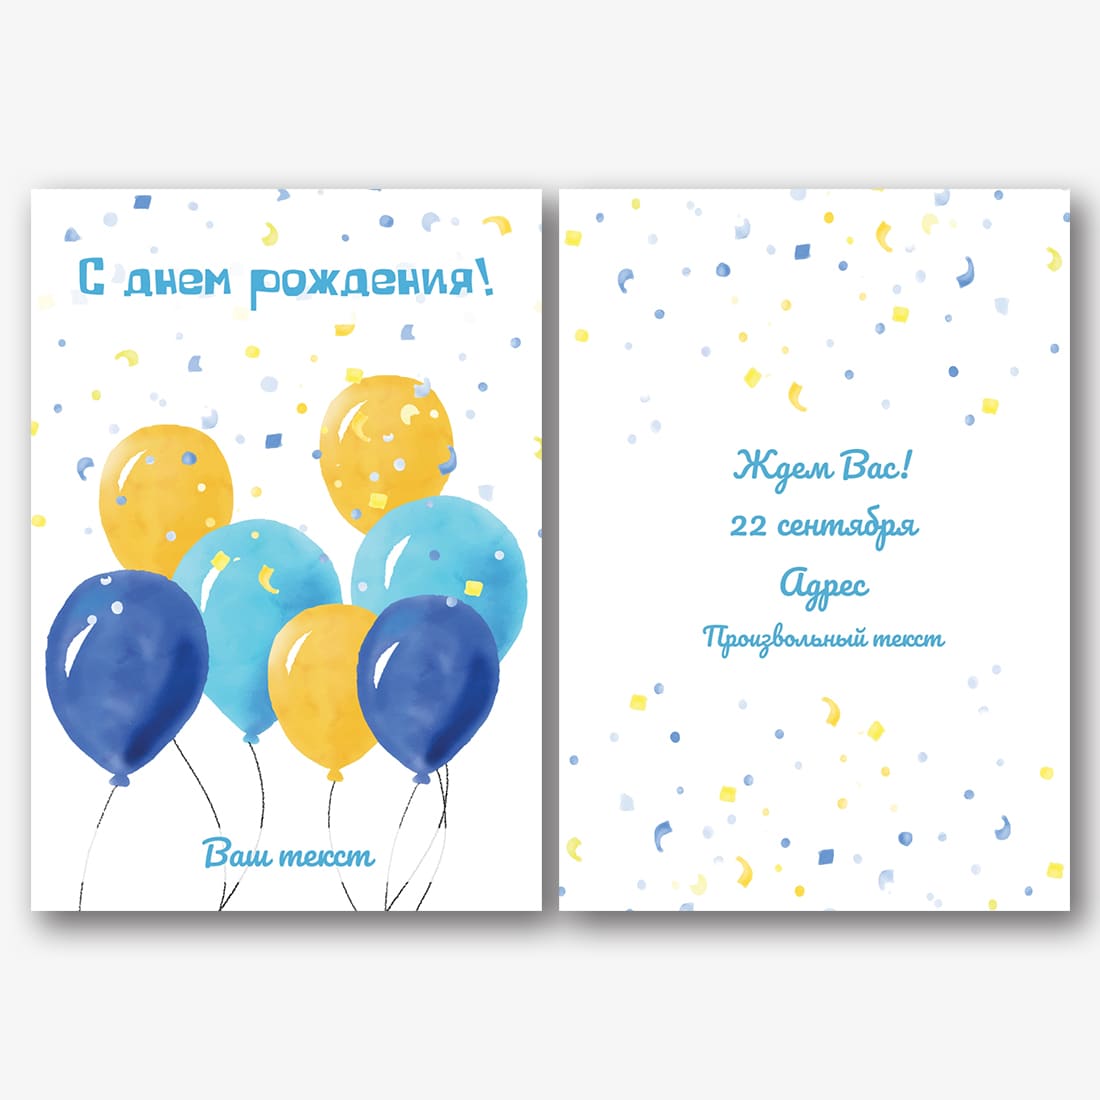 Печать открыток на заказ: примеры веселых винтажных открыток на День рождения